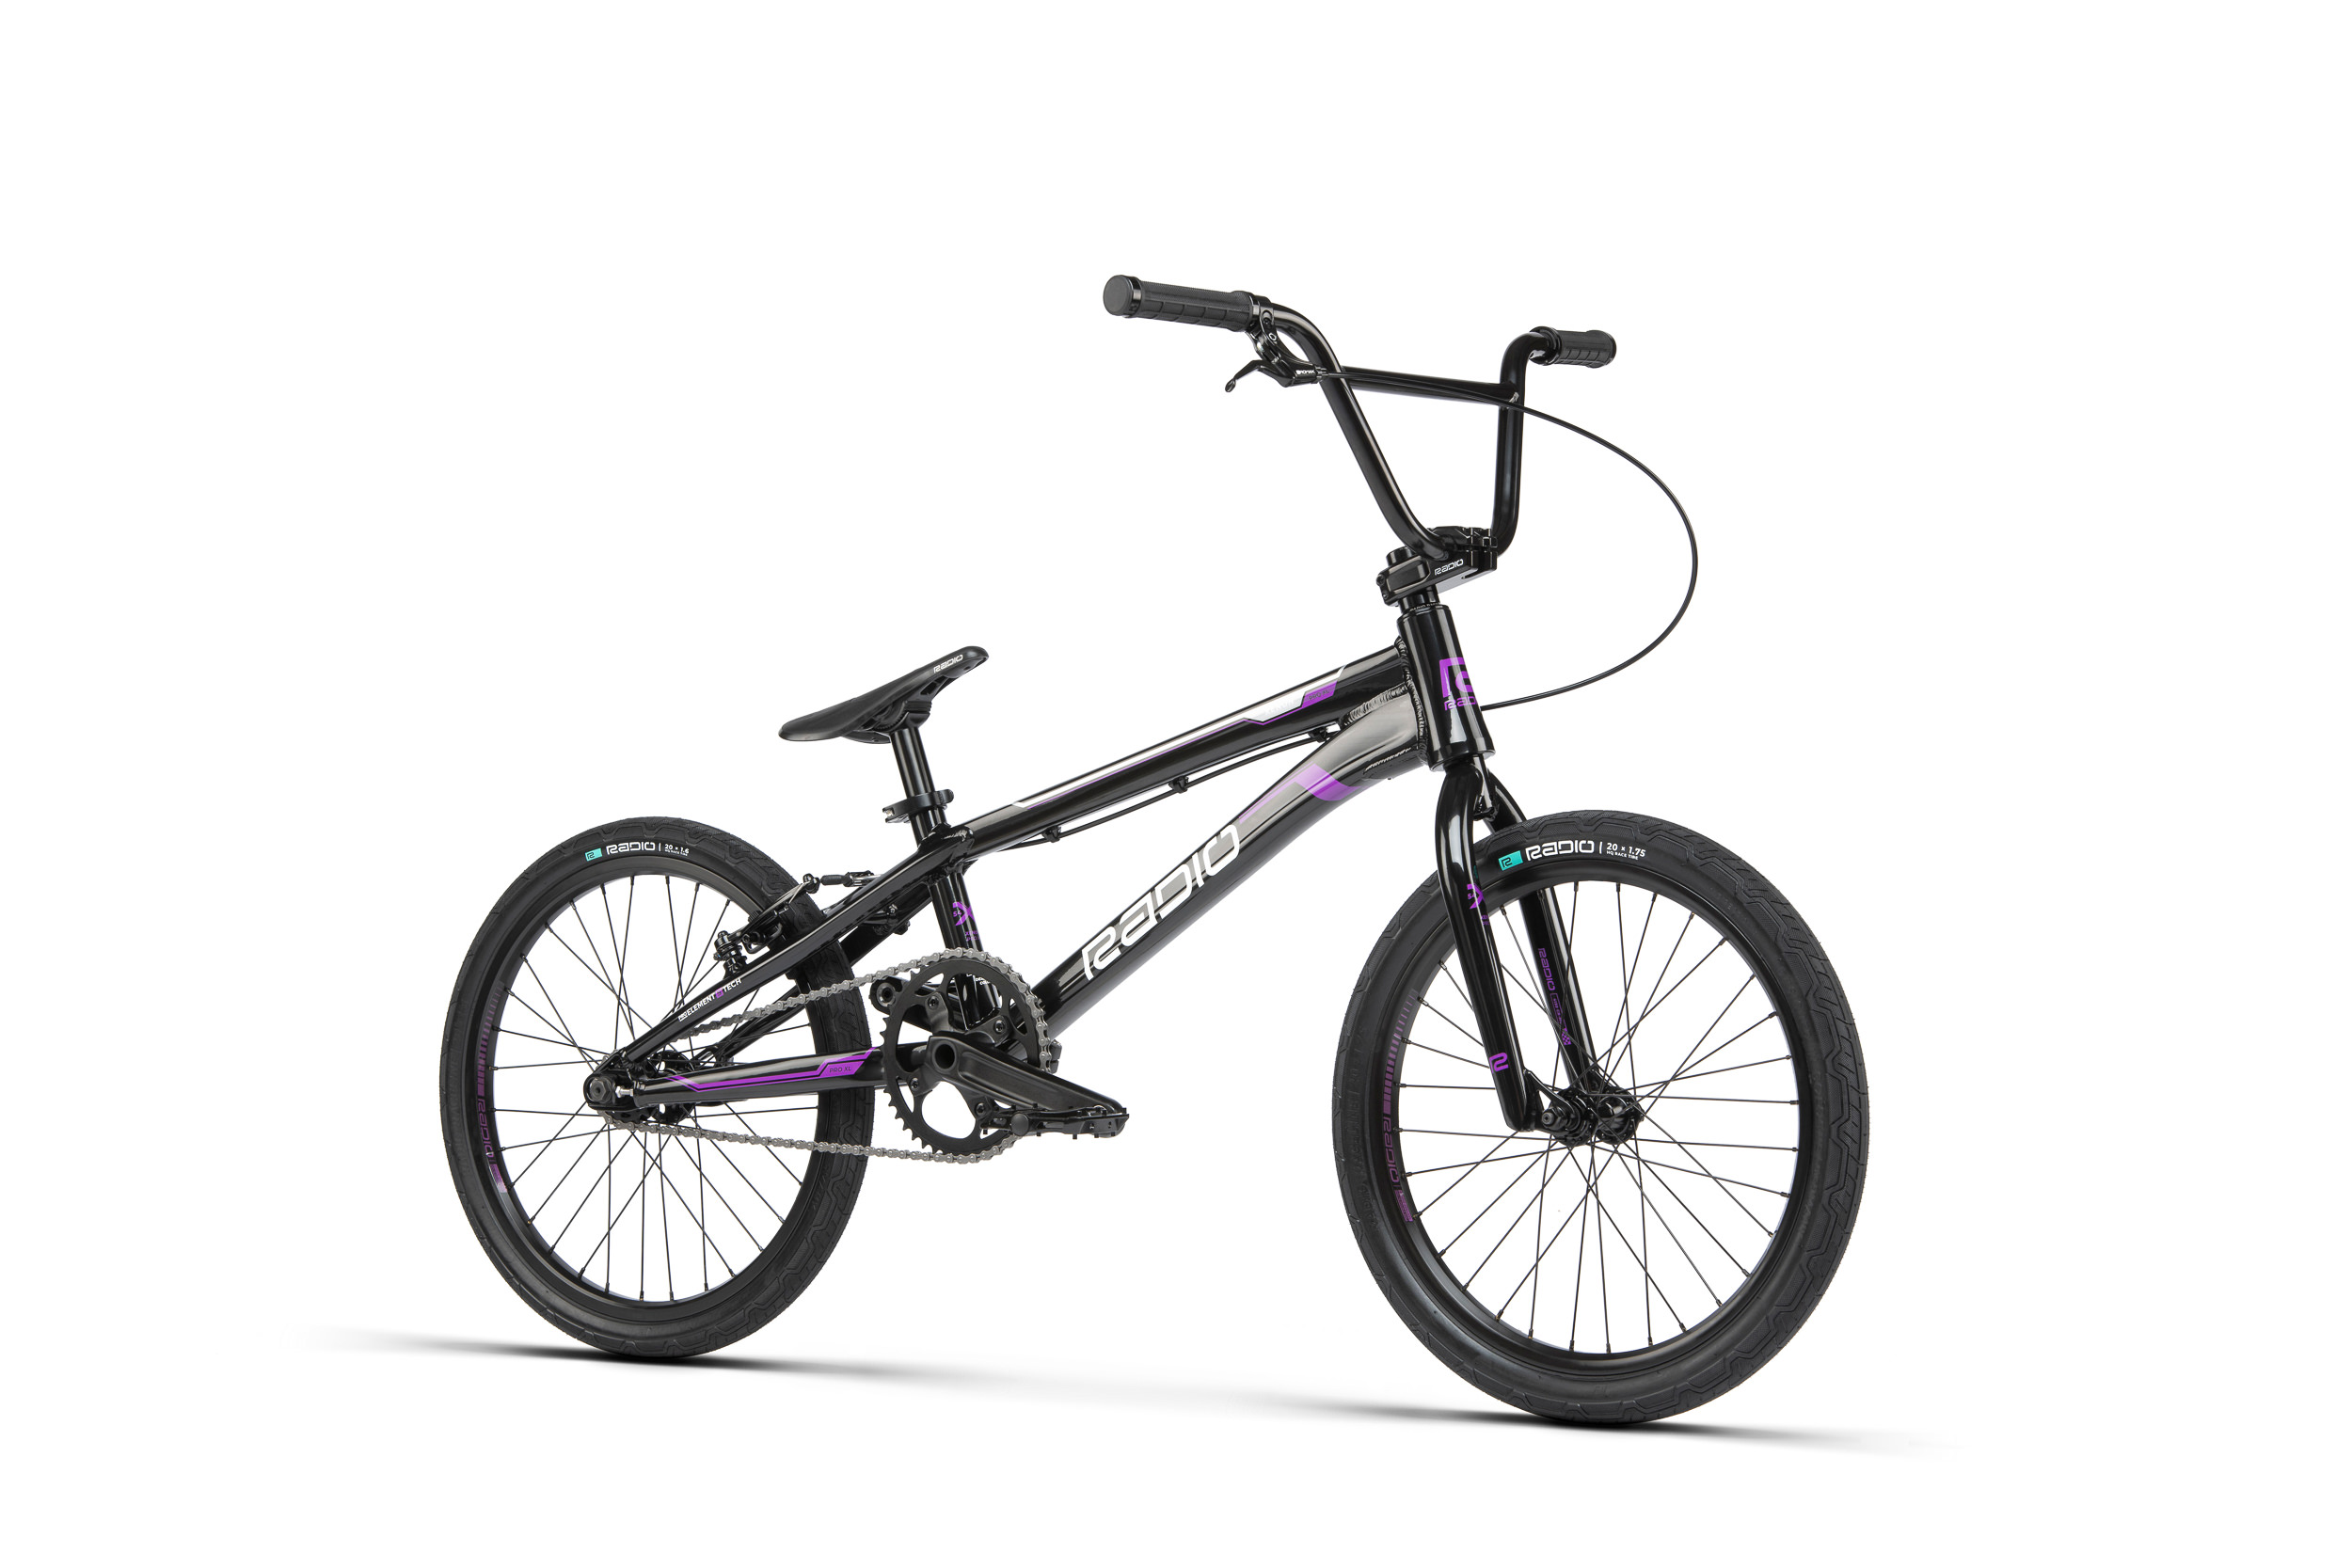 Xenon Pro XL – Bikes